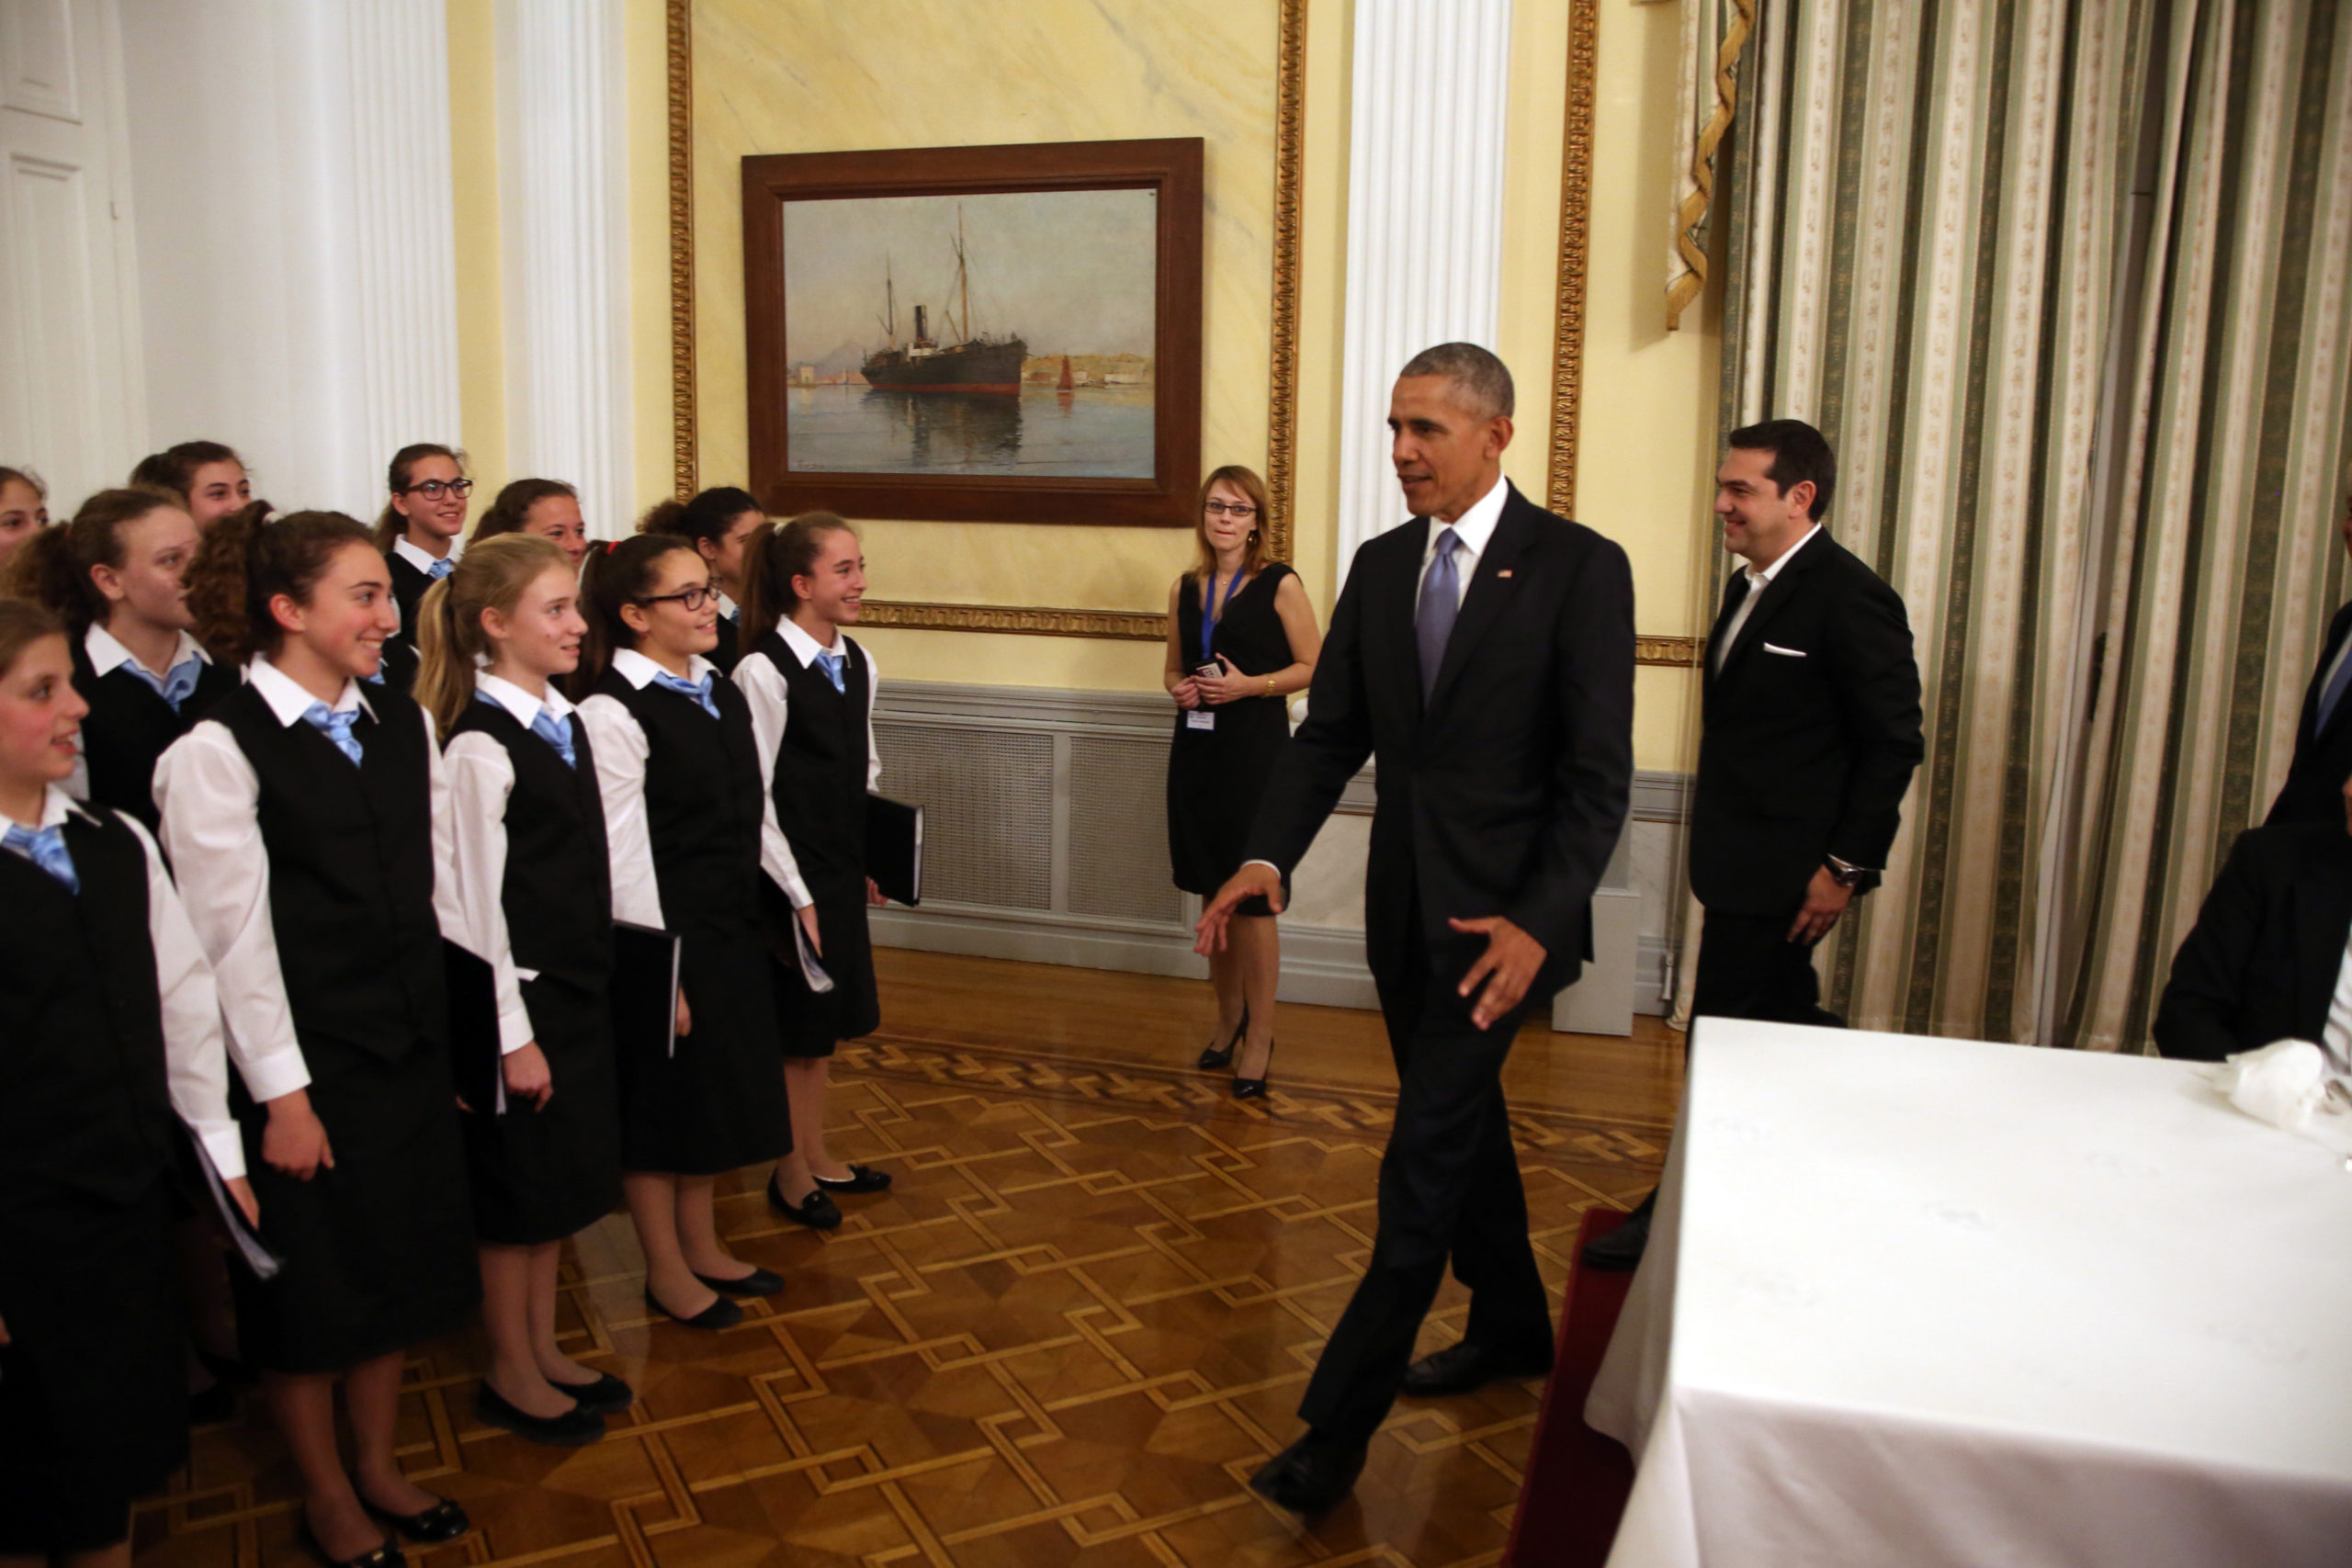 Το ΒΙΝΤΕΟ από το δείπνο στο Προεδρικό Μέγαρο που ανέβασε ο φωτογράφος του Ομπάμα